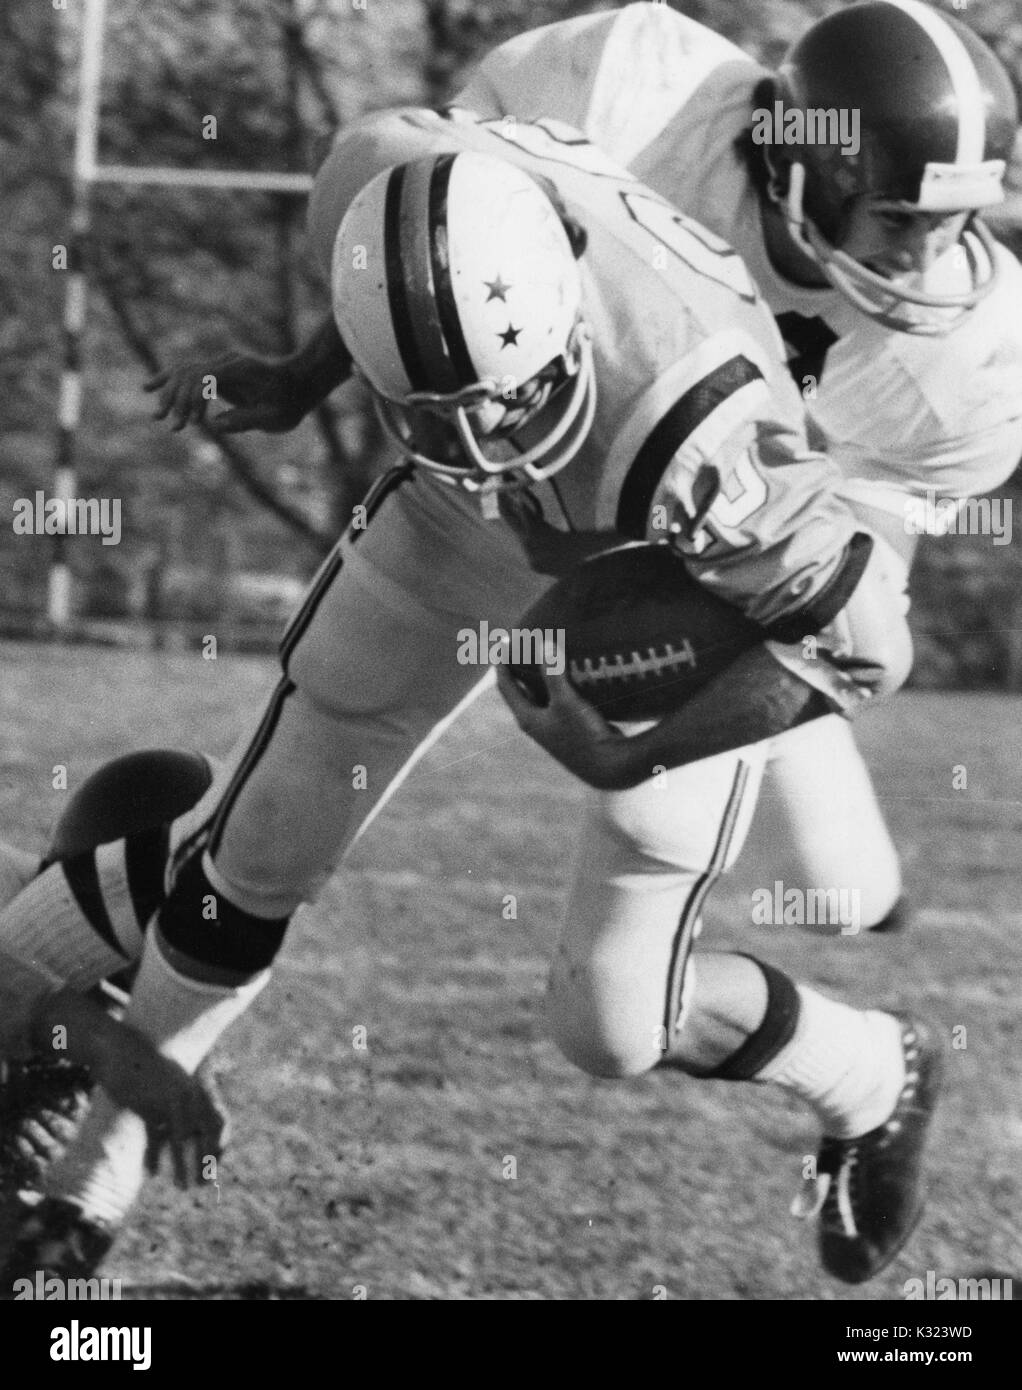 Un Johns Hopkins giocatore di calcio con il calcio sempre affrontato da un giocatore della squadra avversaria durante una partita alla Johns Hopkins University, Baltimora, Maryland, 1975. Foto Stock